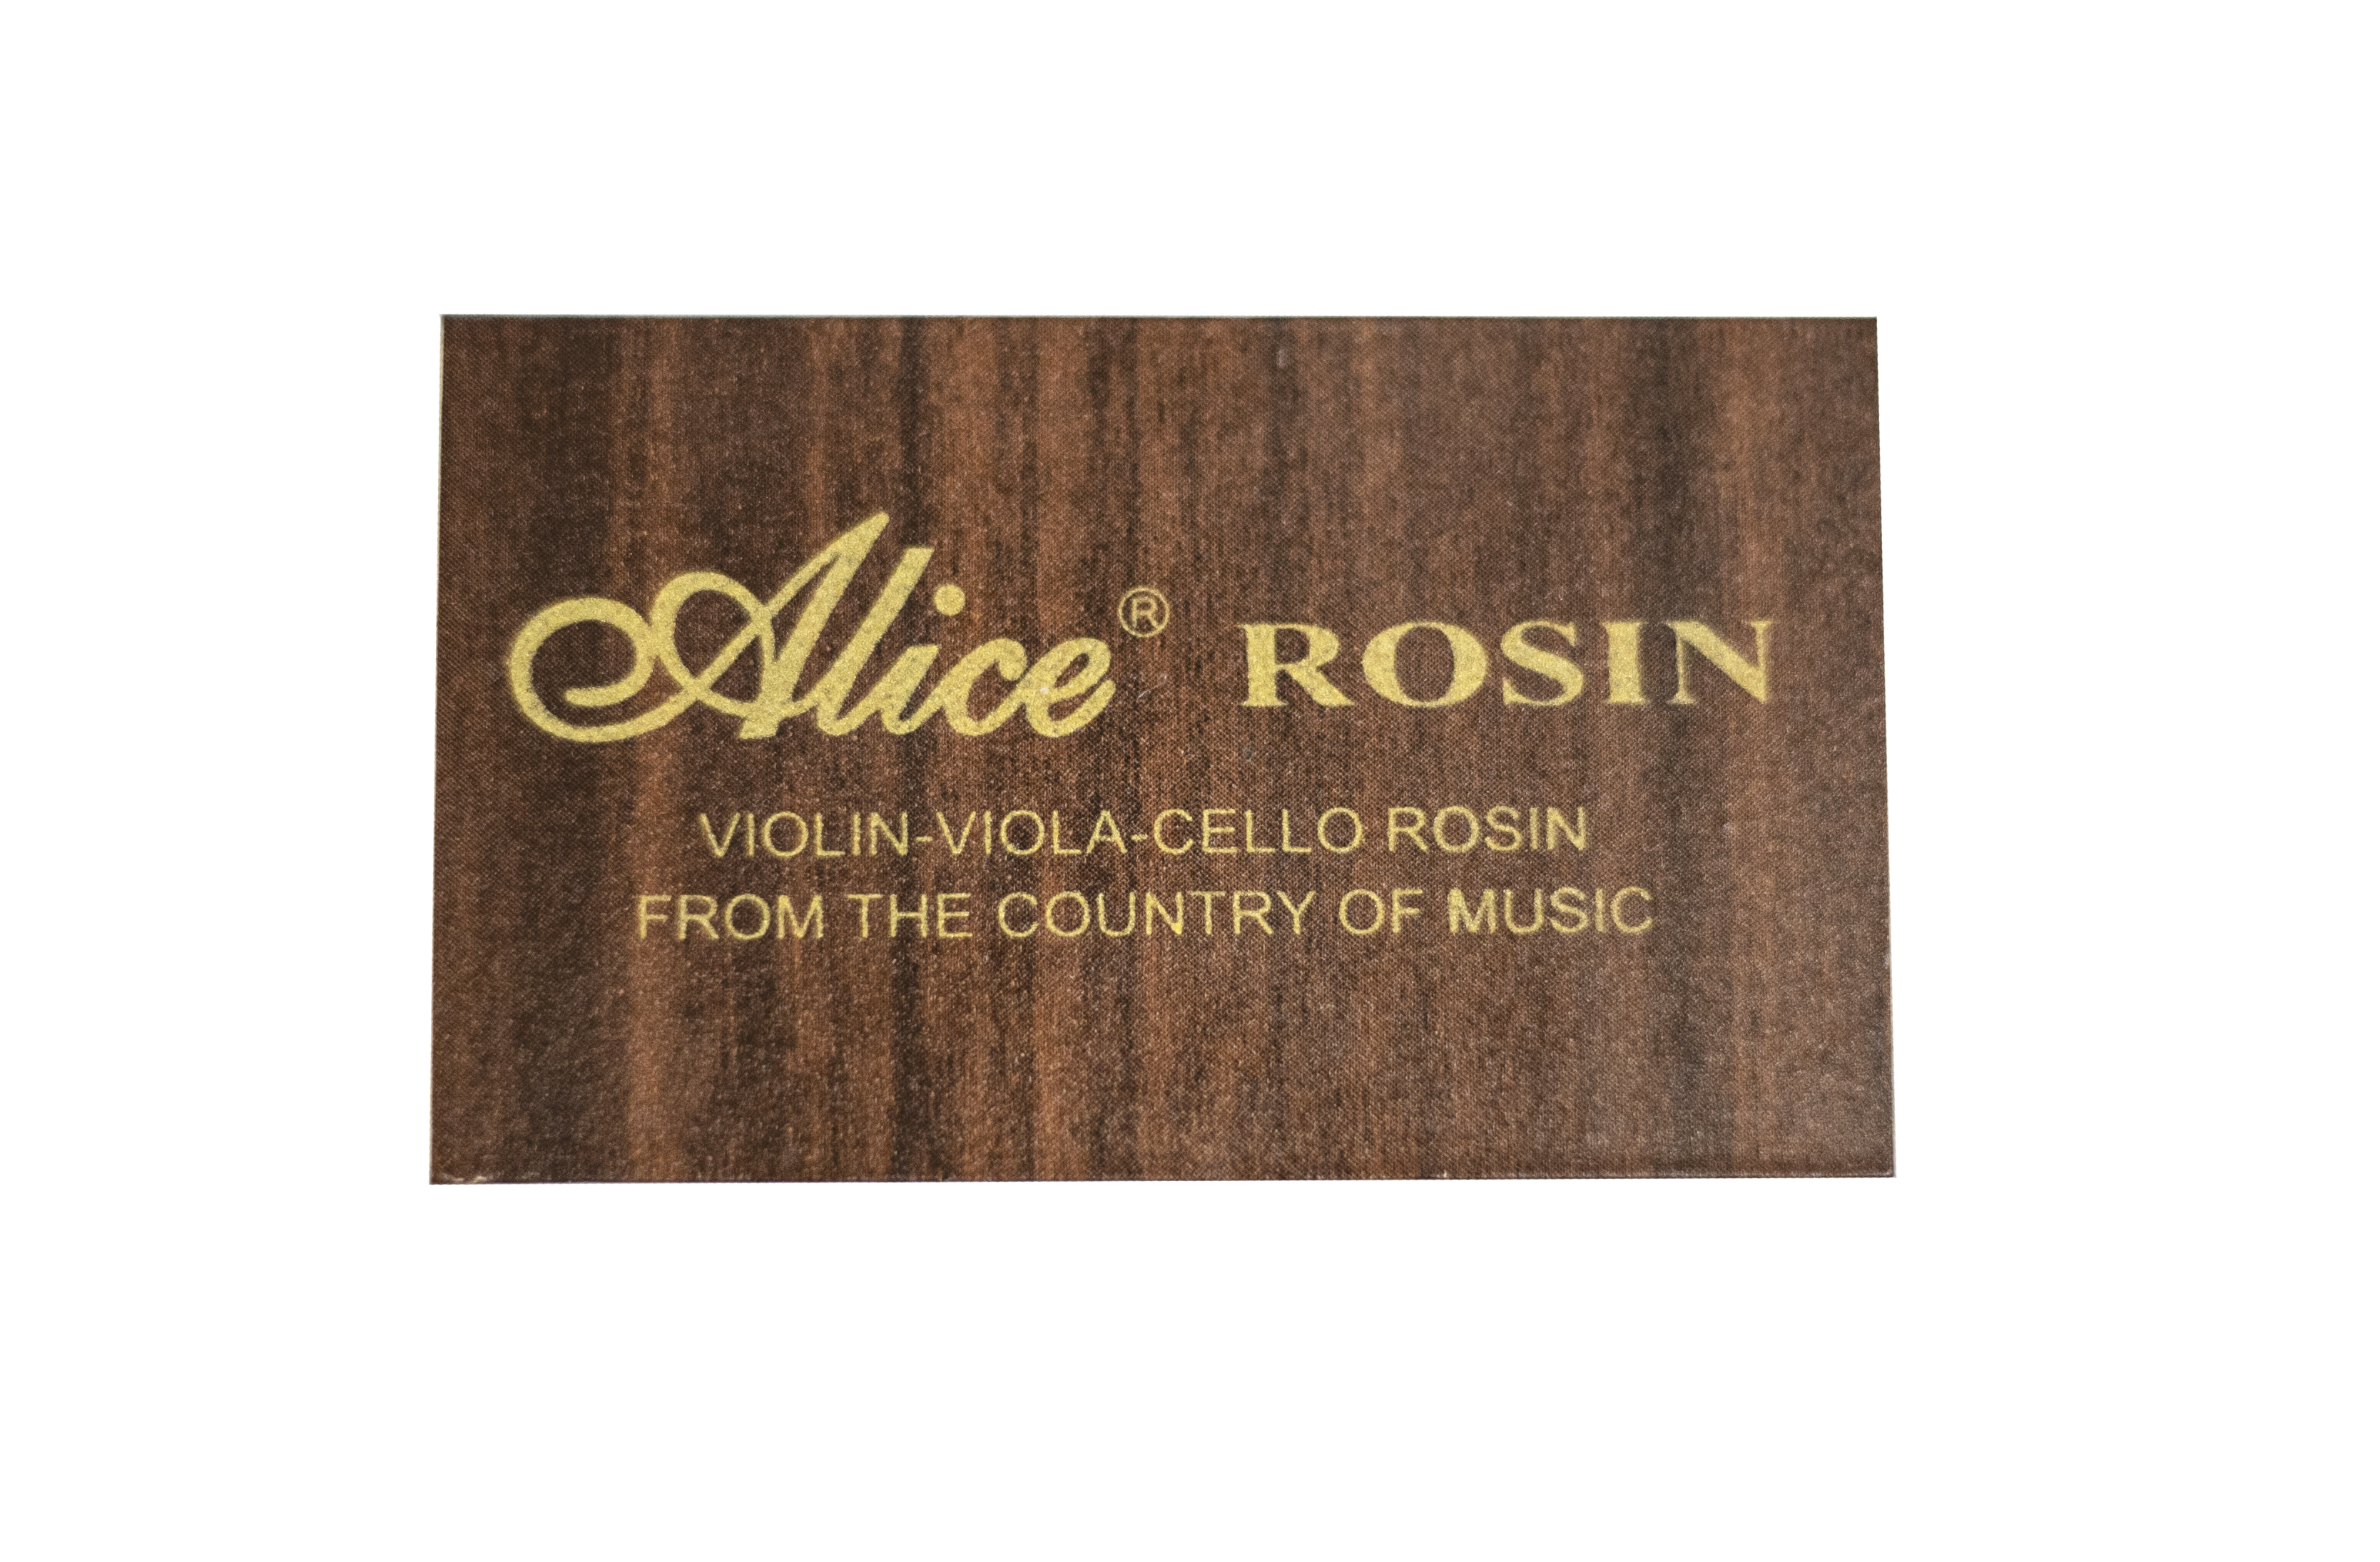 Alice Violin-Viola-Cello Rosin Light